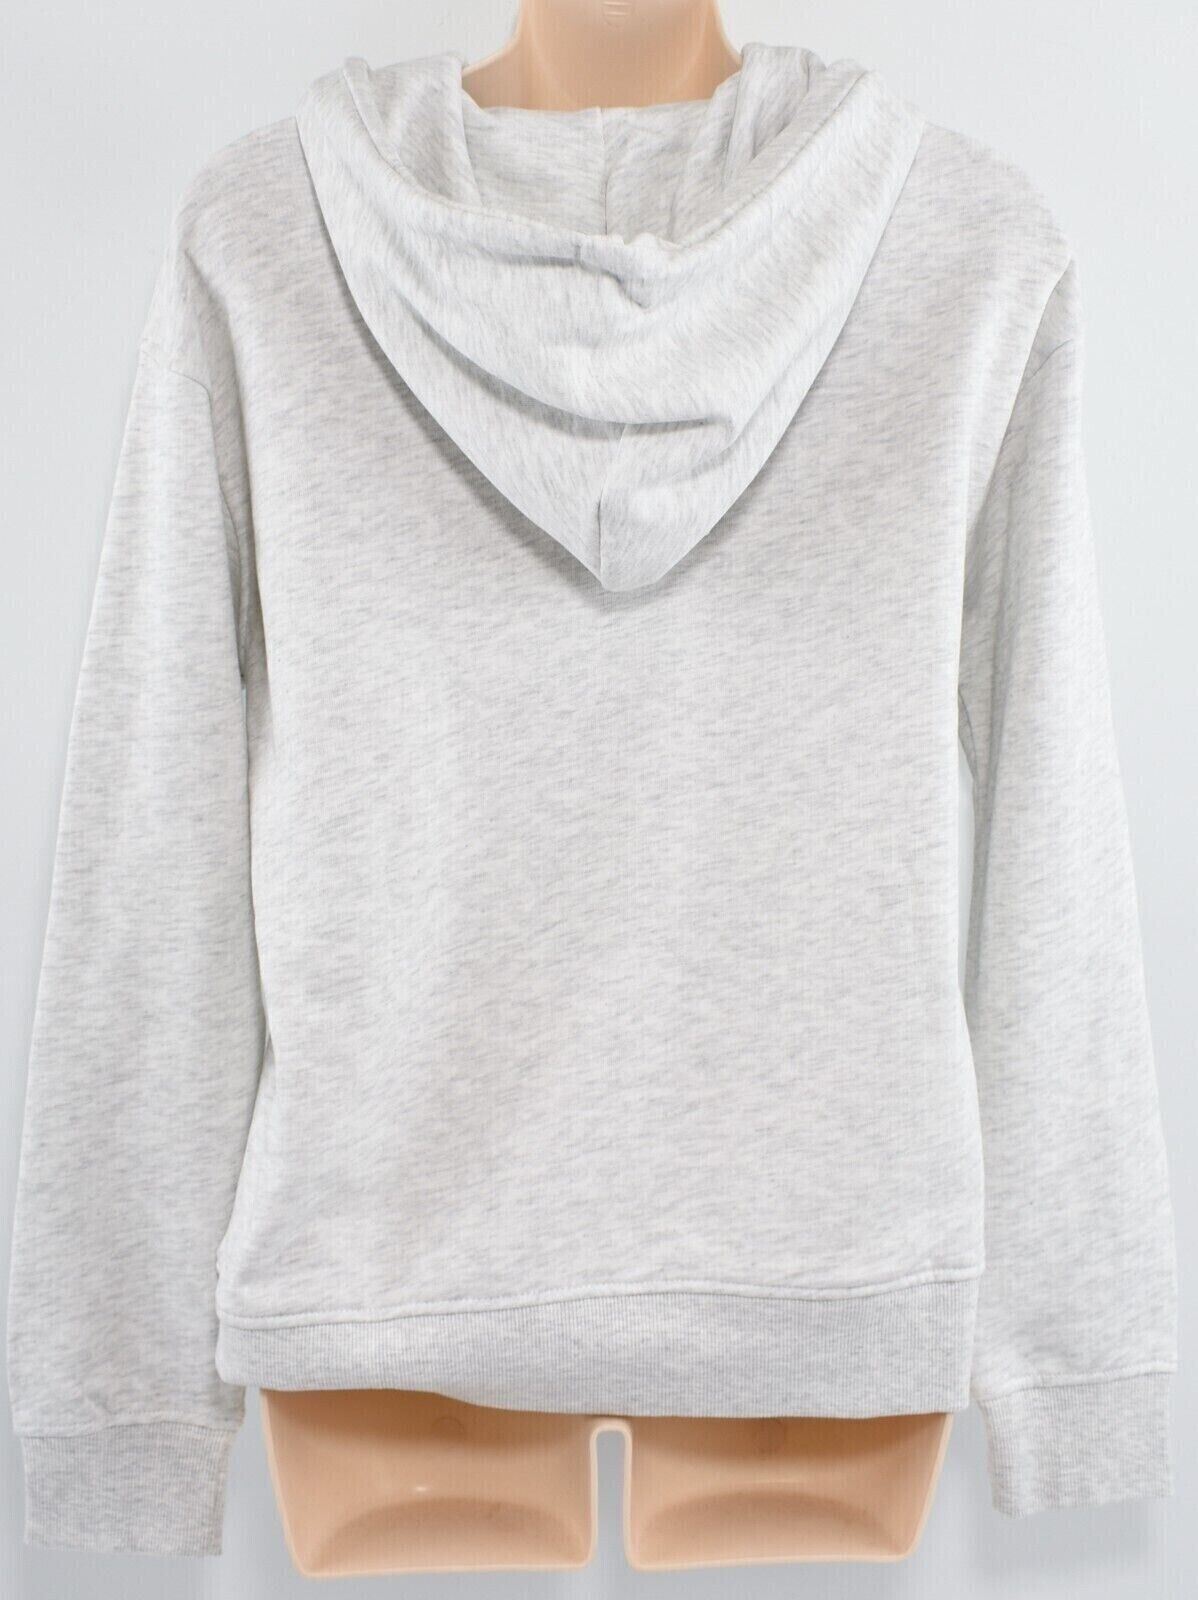 O'NEILL Women's CUBE Hoodie, Hooded Sweatshirt, White/Grey Melange, size XS /8